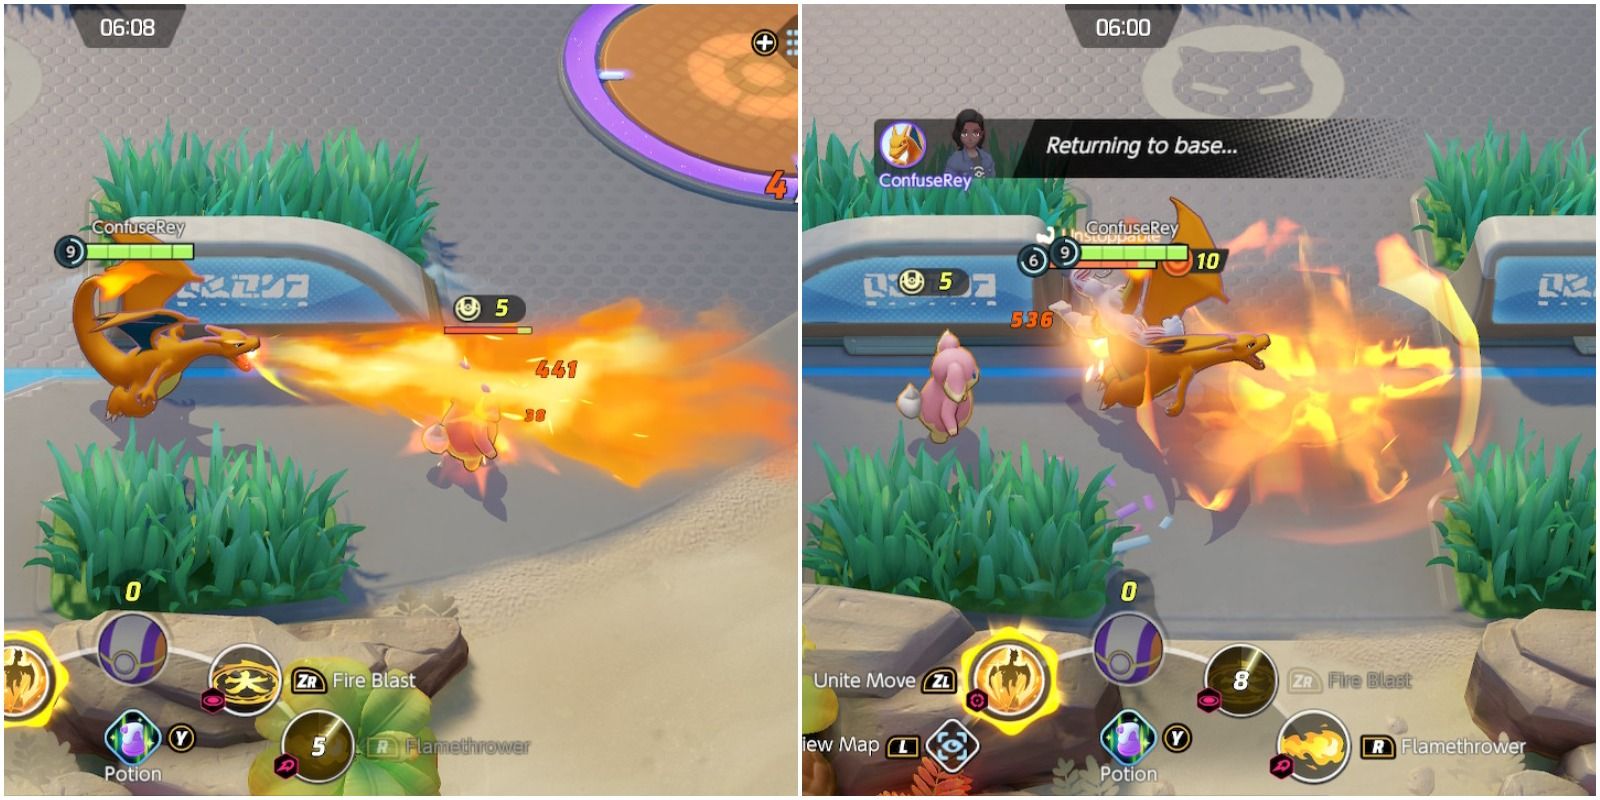 покемоны объединяют чаризарда с помощью огнемета и огненного взрыва